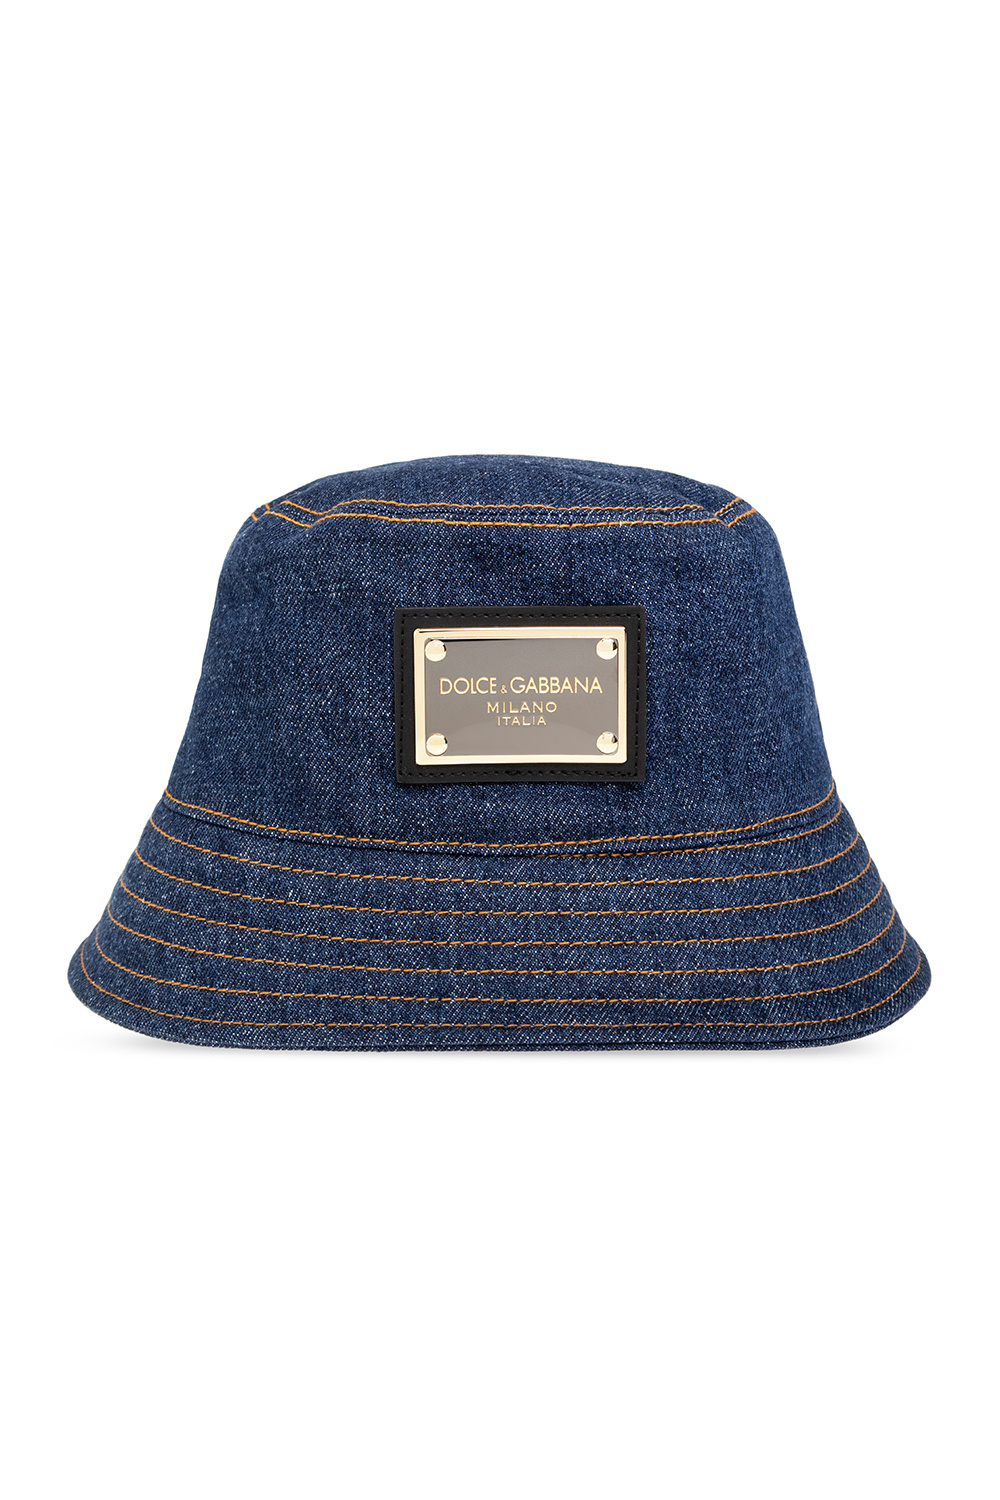 Men's Titleist Milwaukee Brewers Garment Wash Adjustable Hat Bucket hat with logo